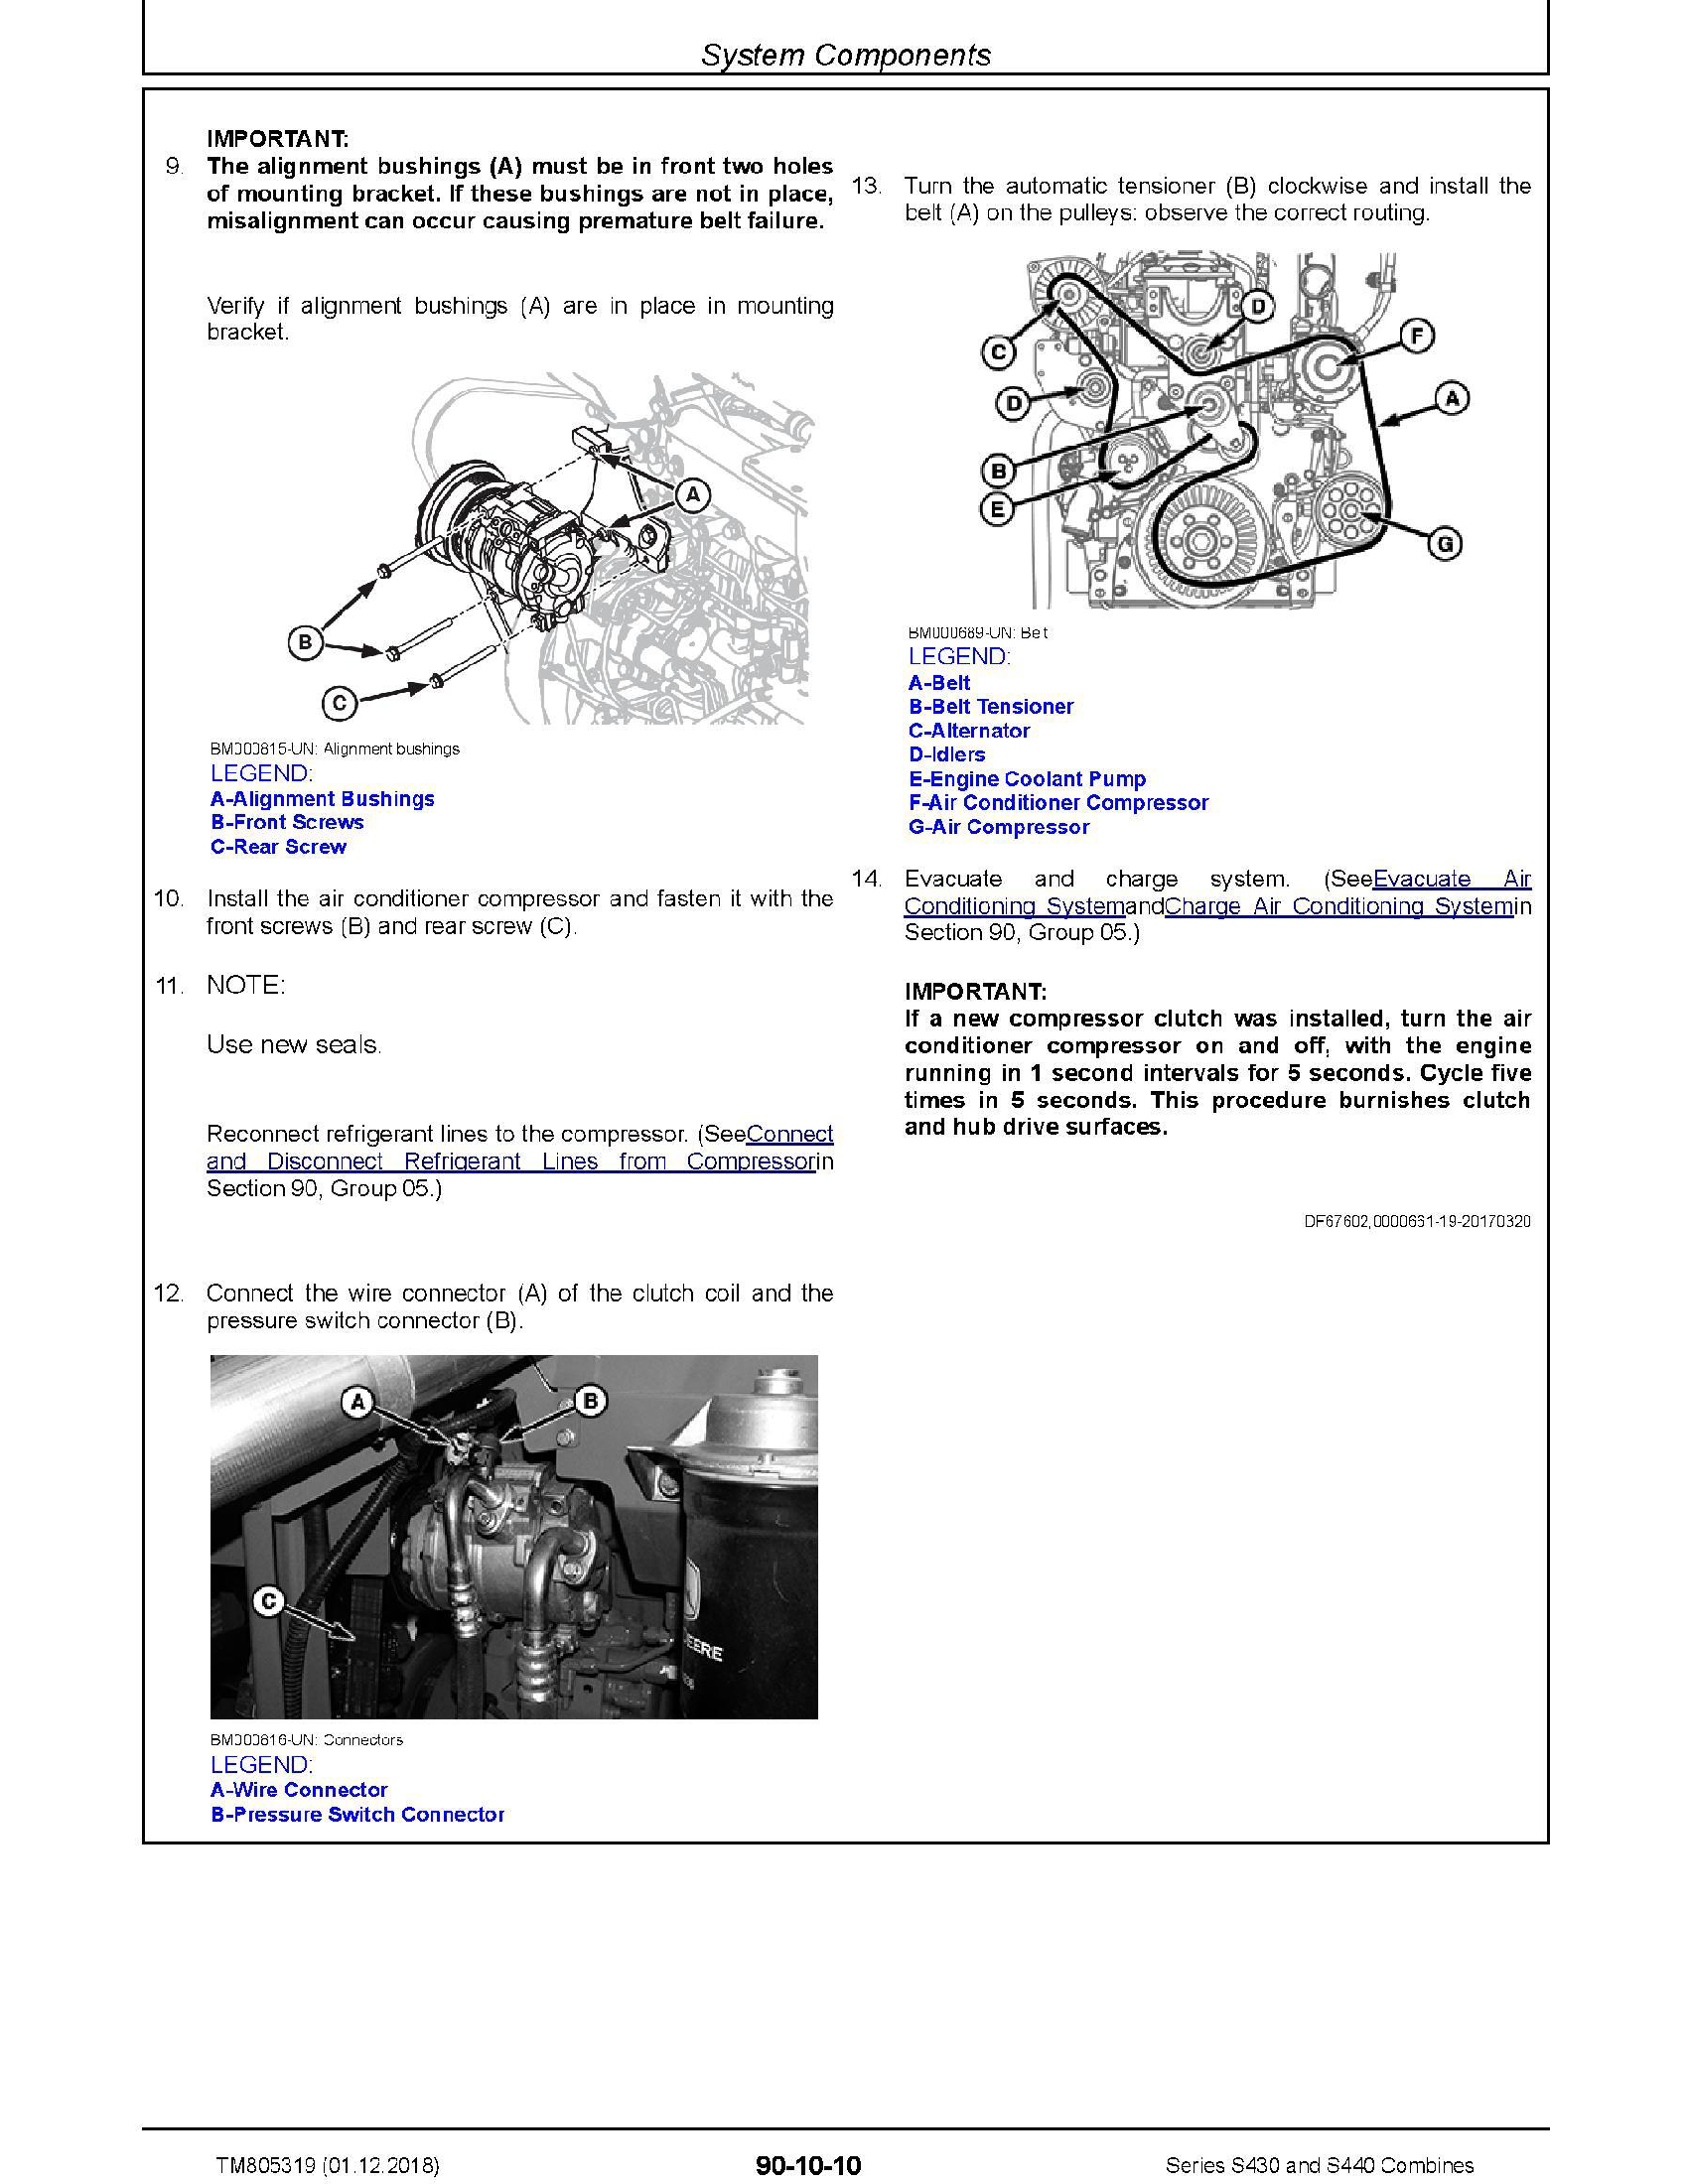 John Deere 544K manual pdf